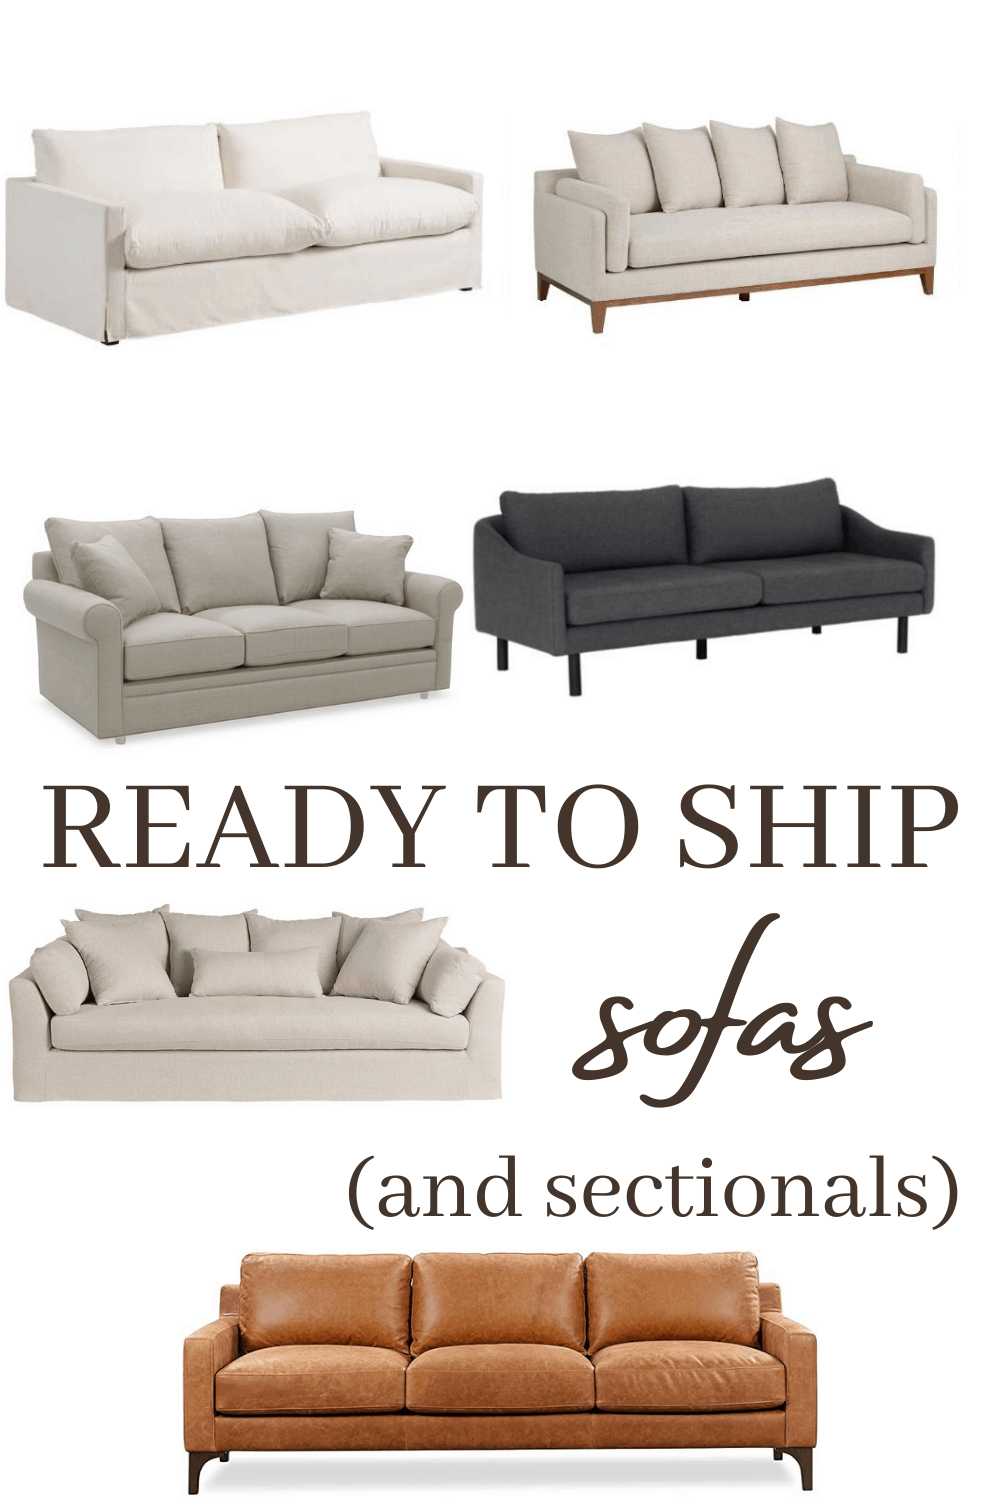 Ready to ship sofas